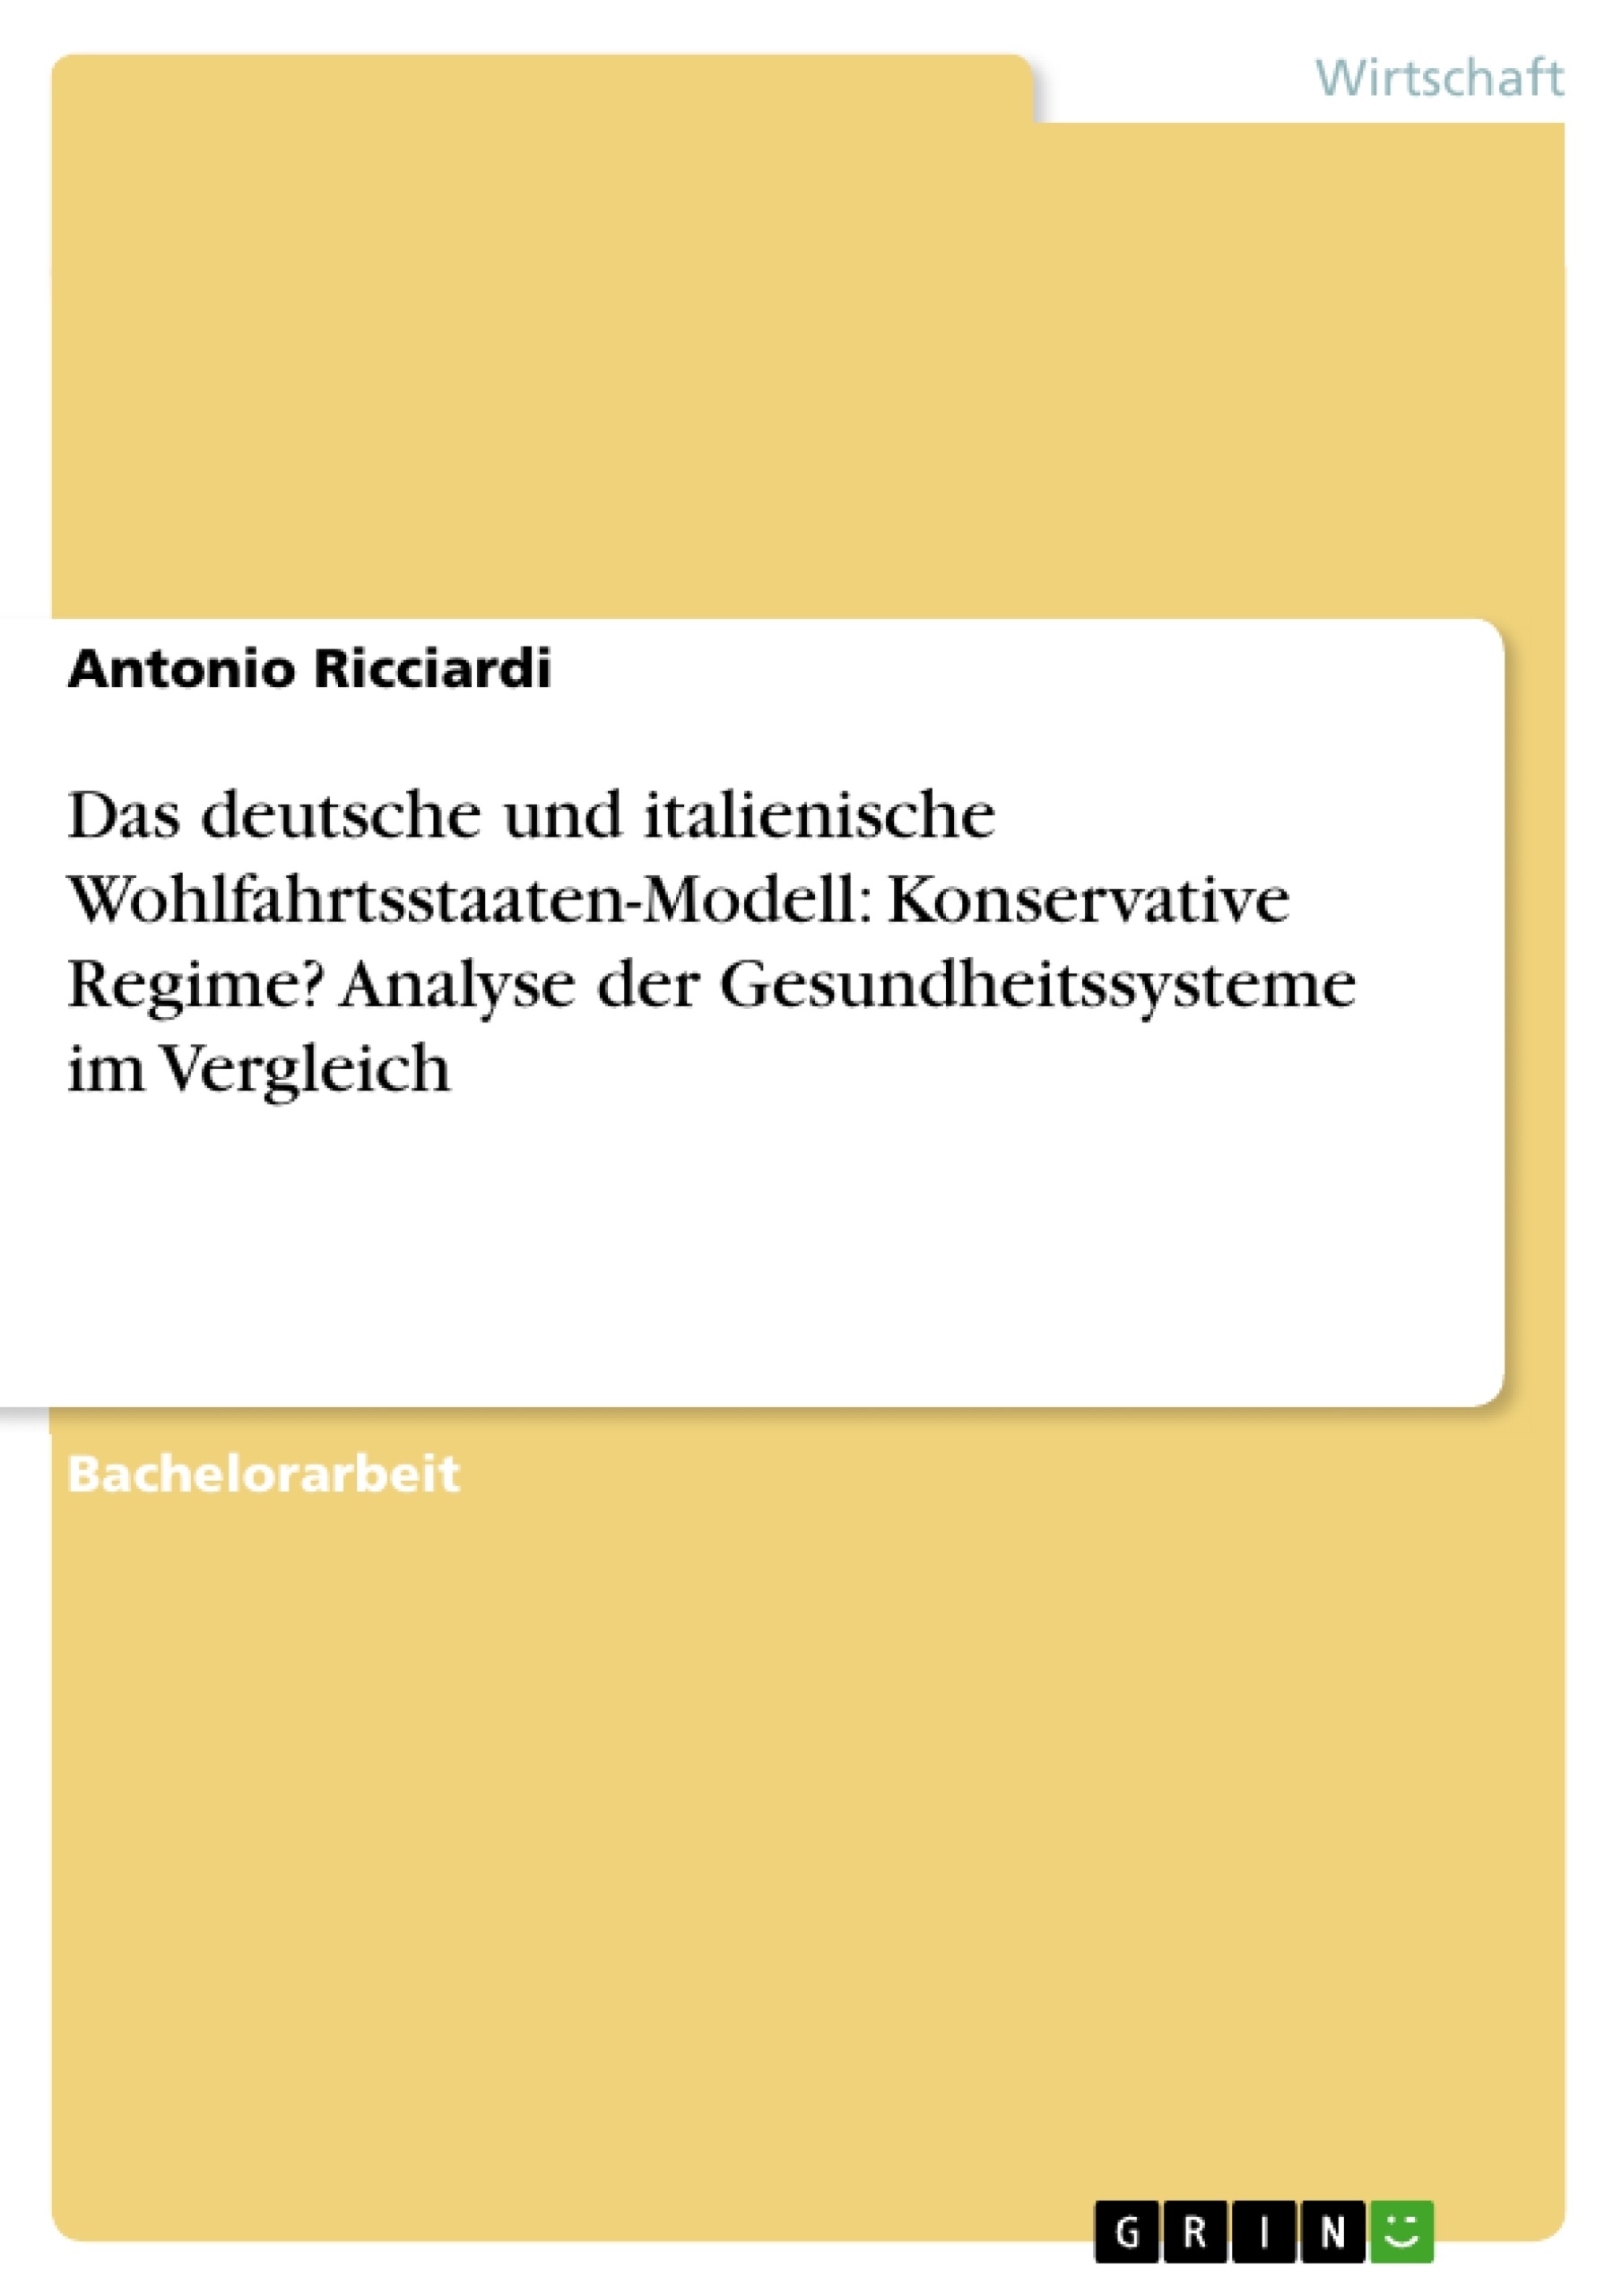 Title: Das deutsche und italienische Wohlfahrtsstaaten-Modell: Konservative Regime? Analyse der Gesundheitssysteme im Vergleich